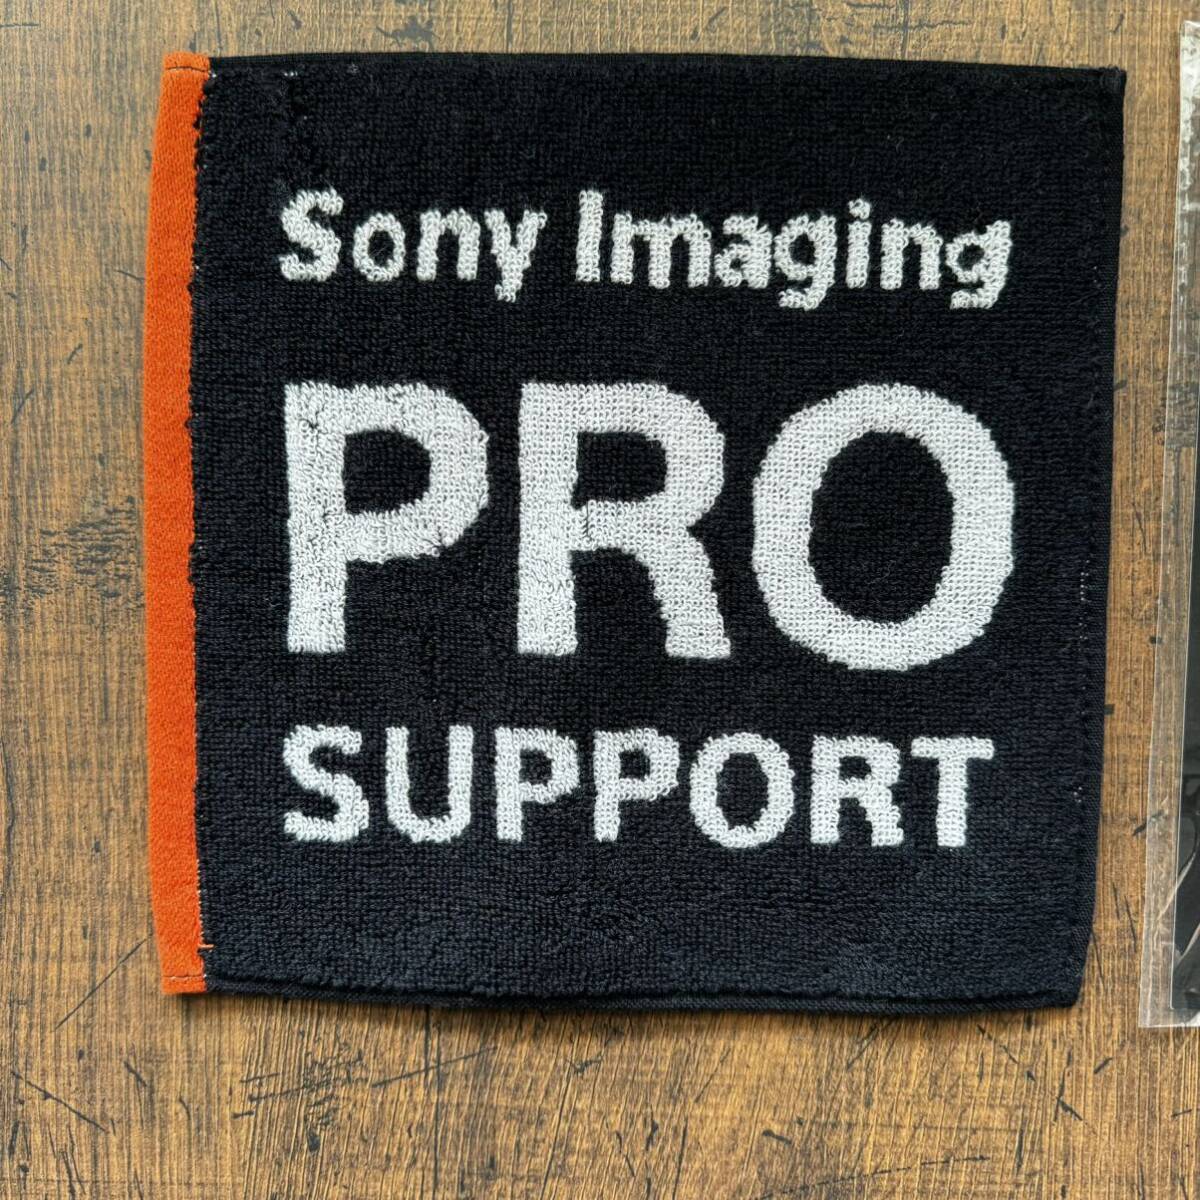 SONY ソニー プロサポート Pro support 非売品 ステッカー ミニタオル セット 送料無料の画像2